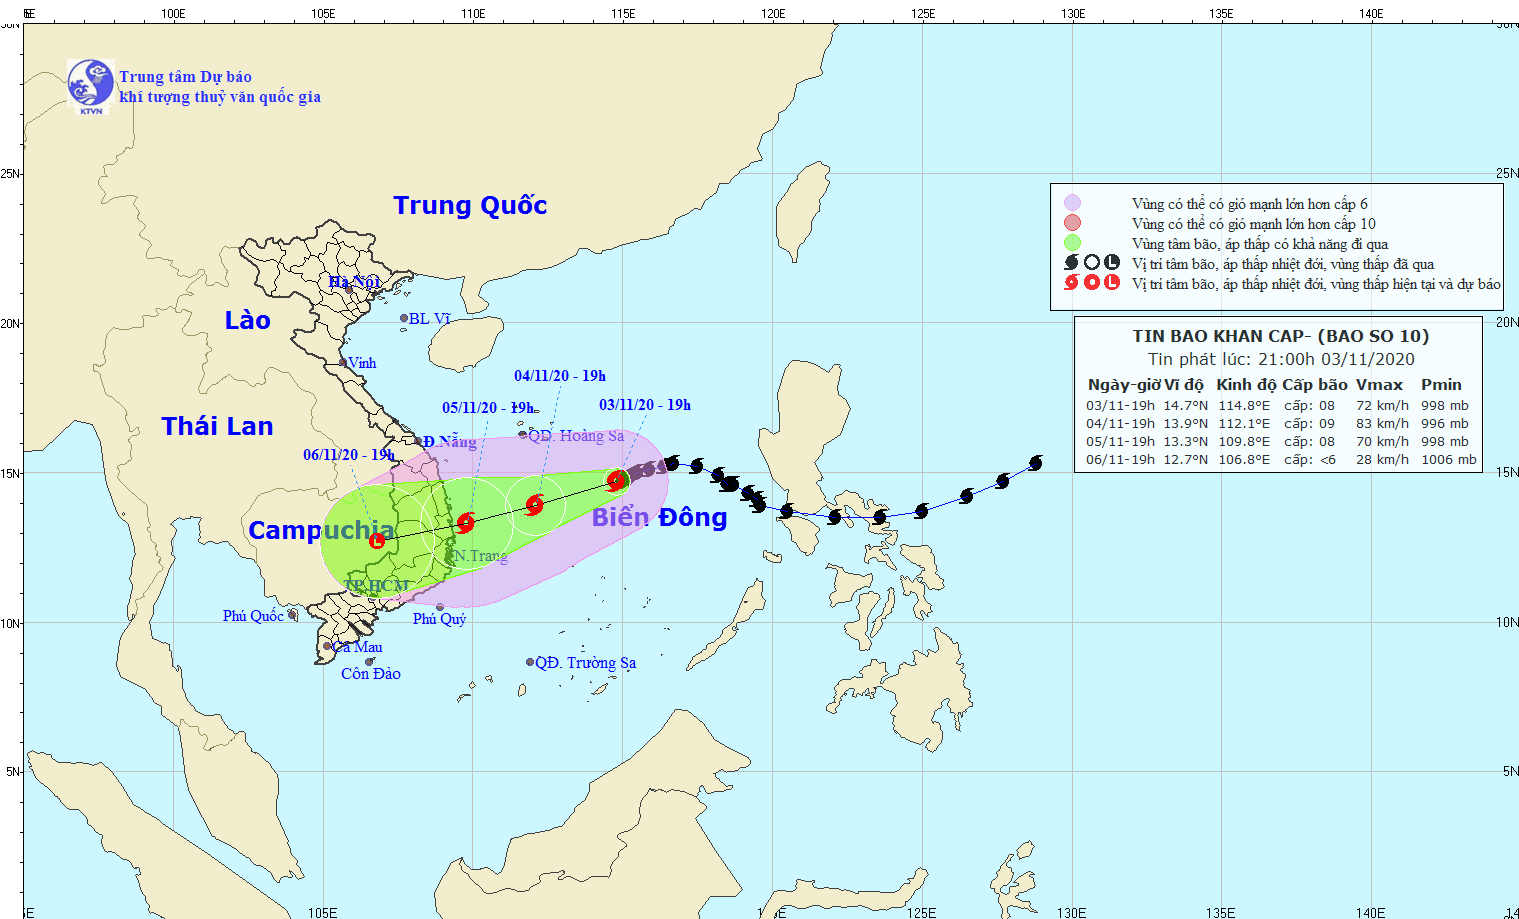 Bão số 10 liên tục thay đổi: Phú Yên - Bình Định lại thành tâm bão?